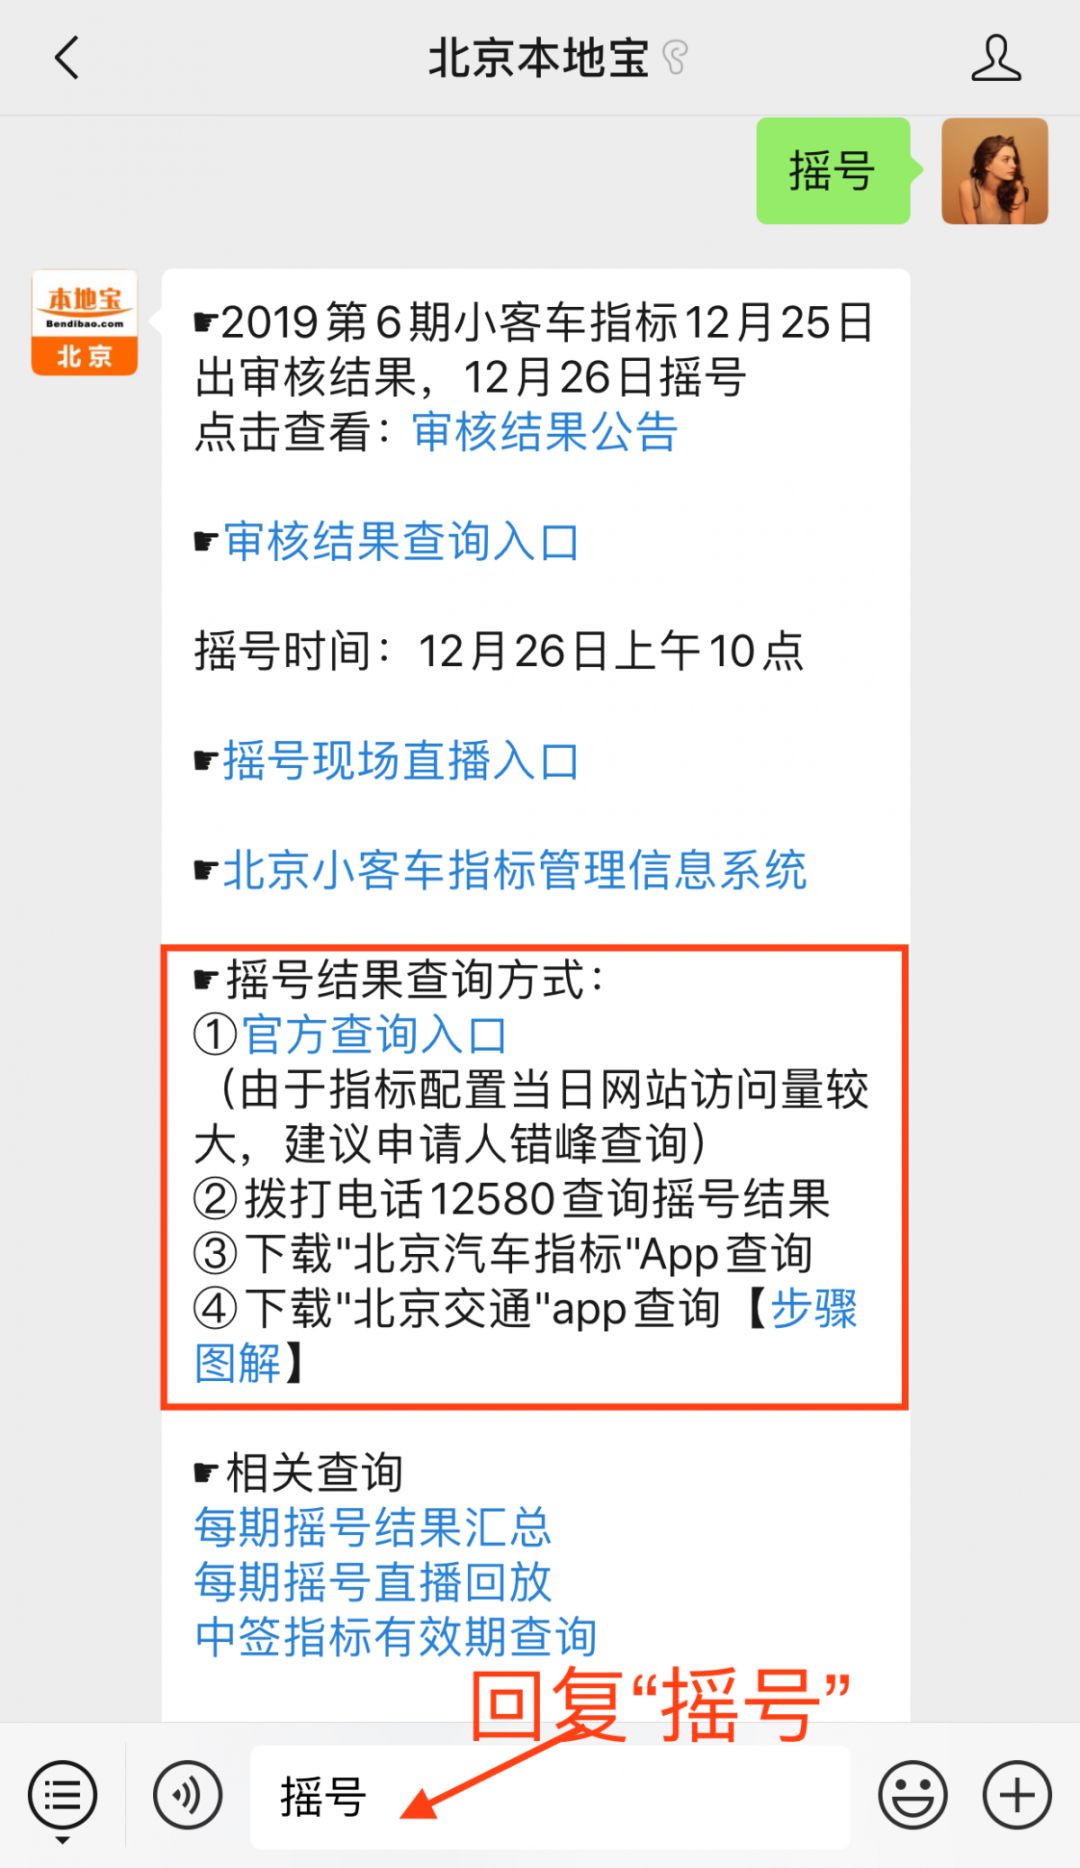 2019年最后一期北京小客车摇号结果公布了附摇号查询入口